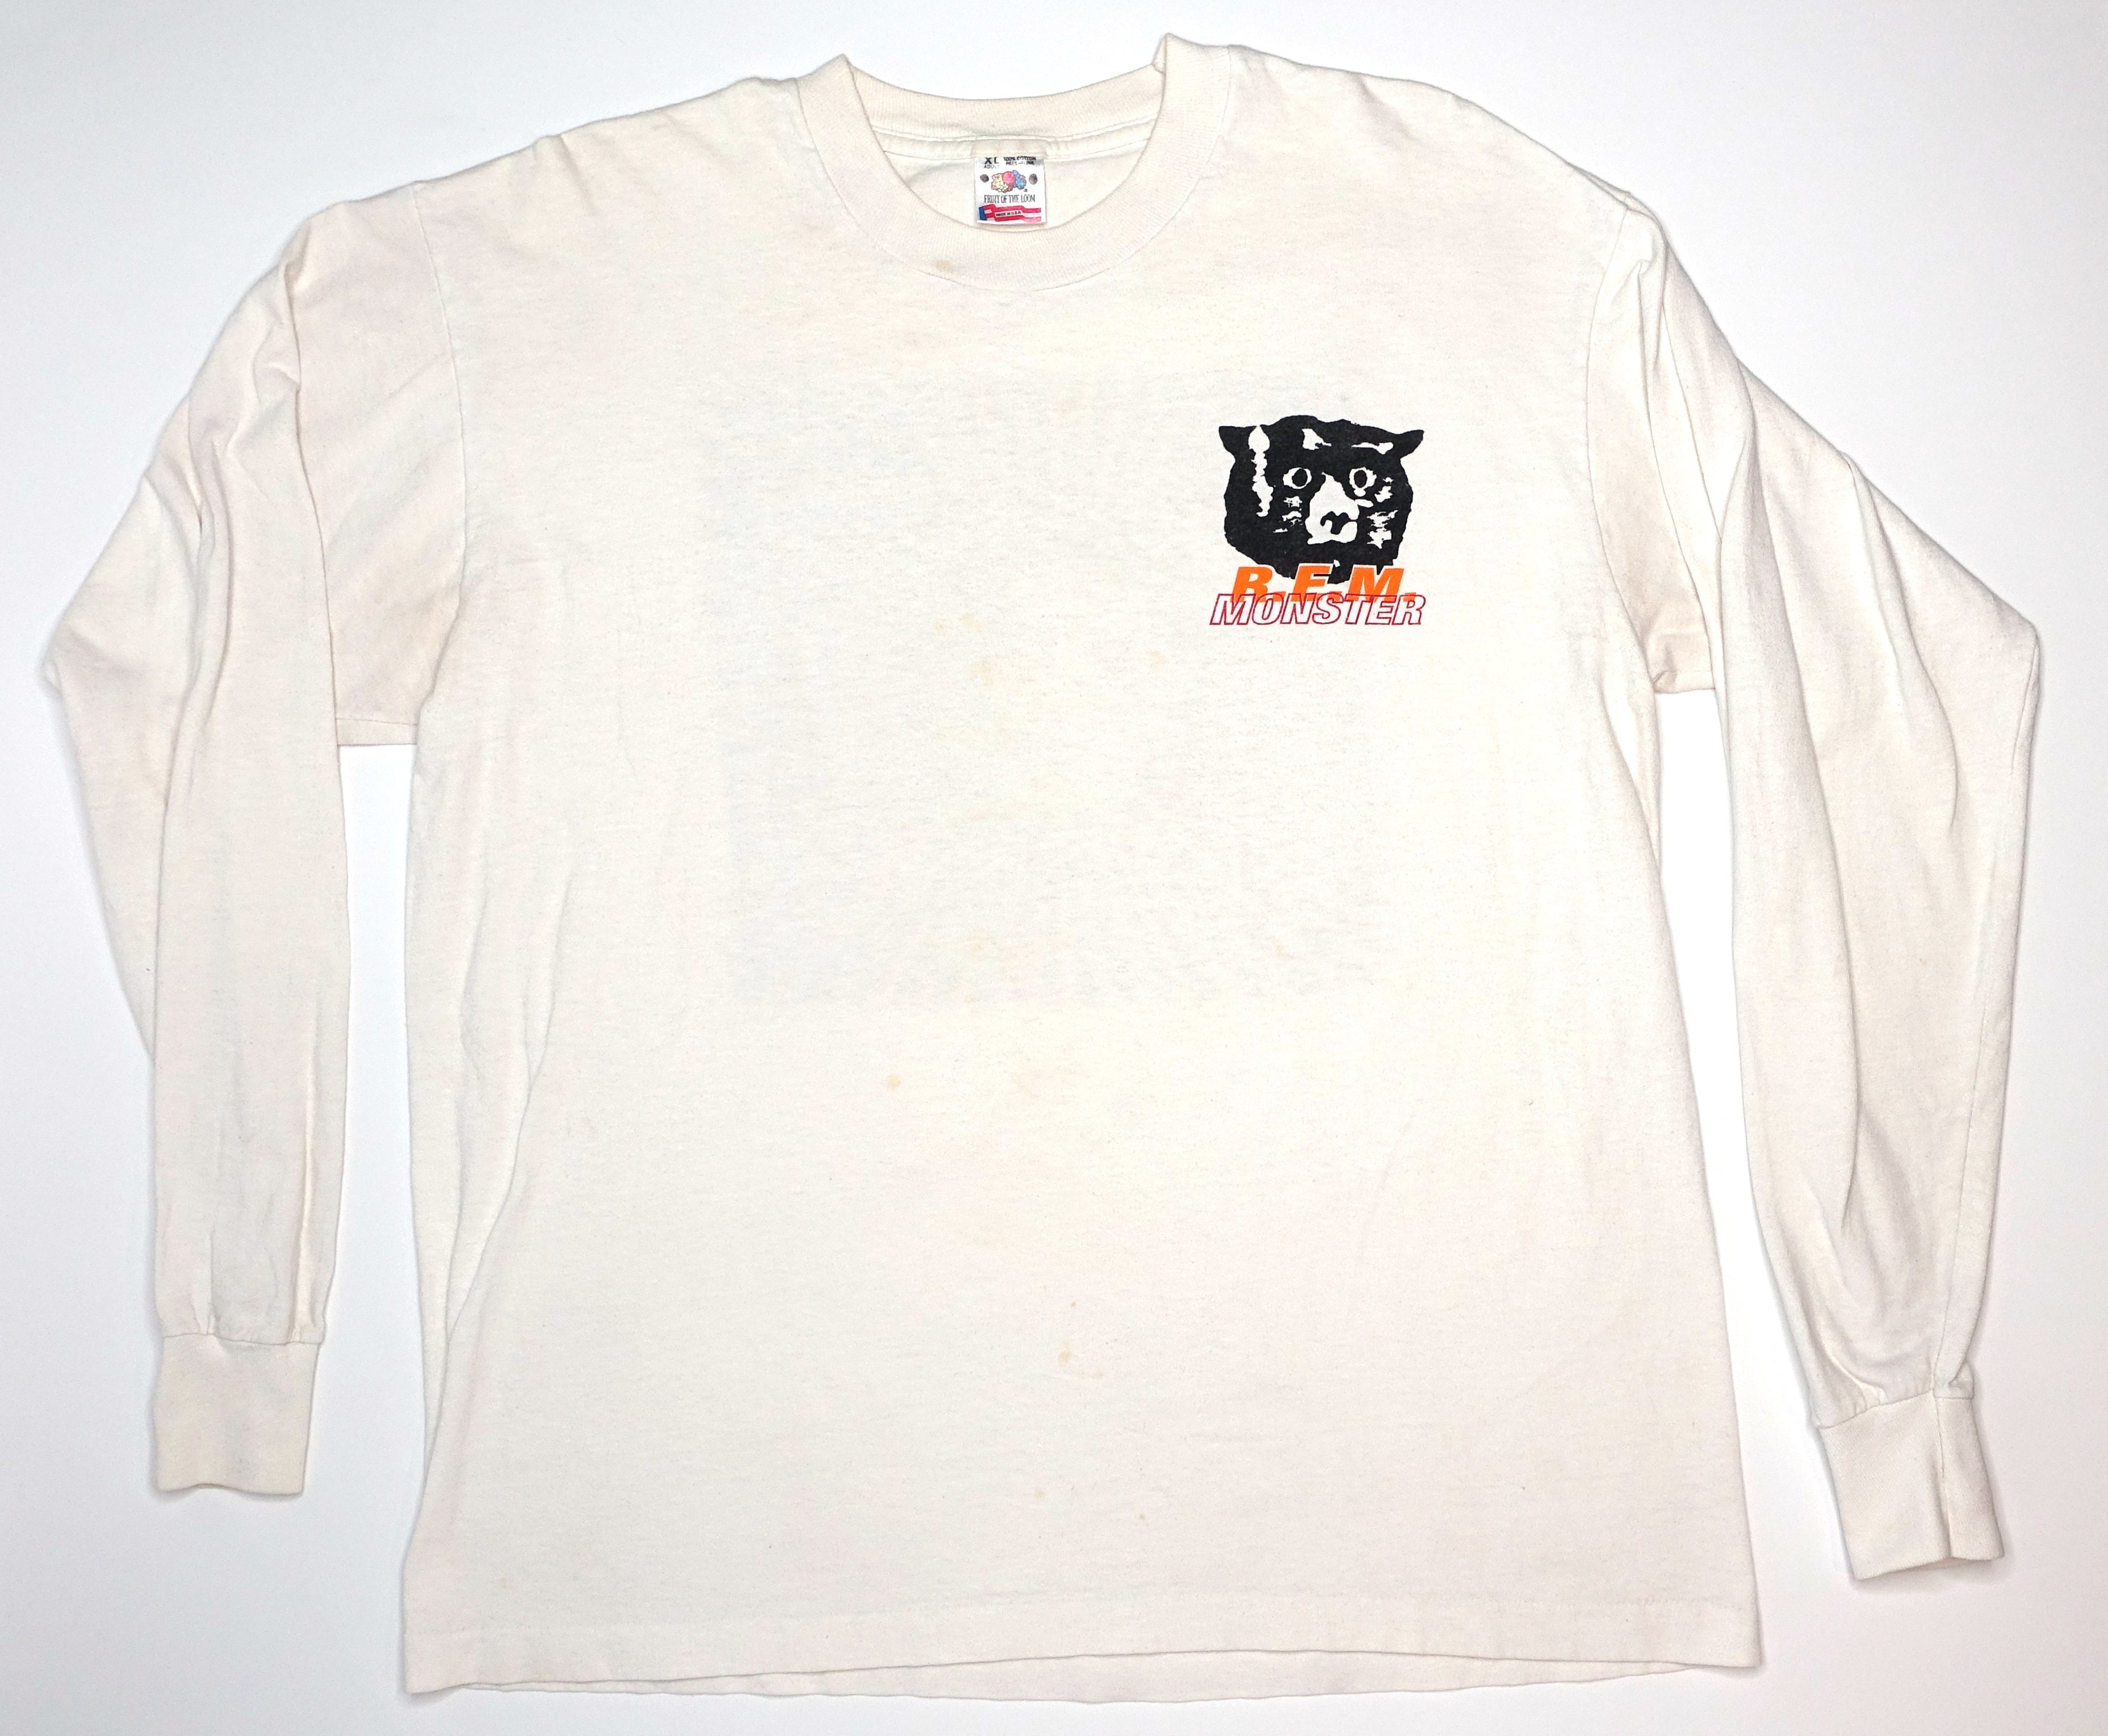 R.E.M. – Song Titles Monster 1994 Long Sleeve Tour Shirt Size XL